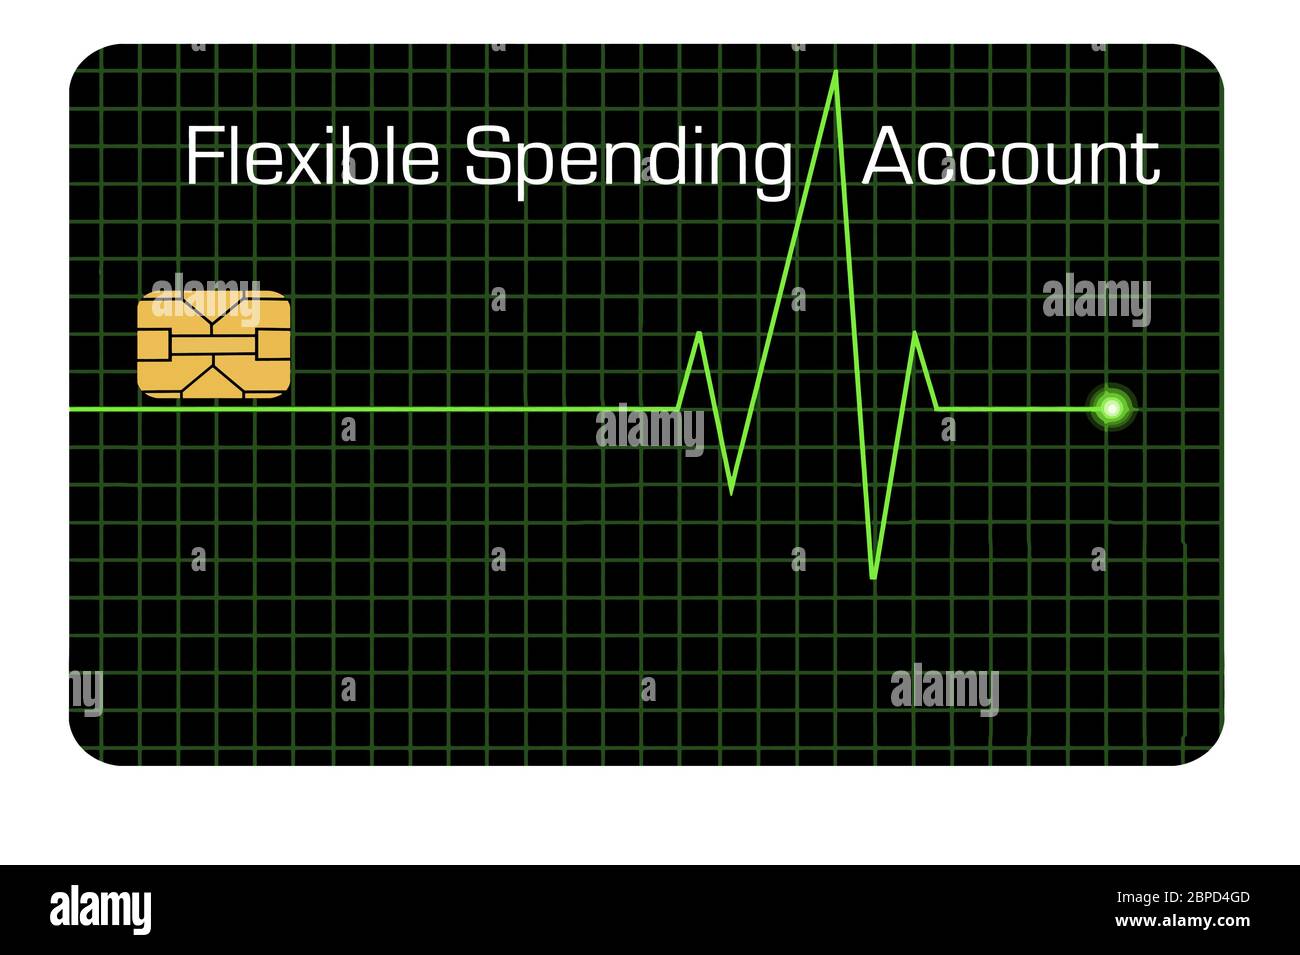 Voici une carte de débit flexible de compte de dépenses conçue avec une ligne graphique EKG pour indiquer que la carte est pour les frais médicaux. Copier la zone de texte. FSA c Illustration de Vecteur